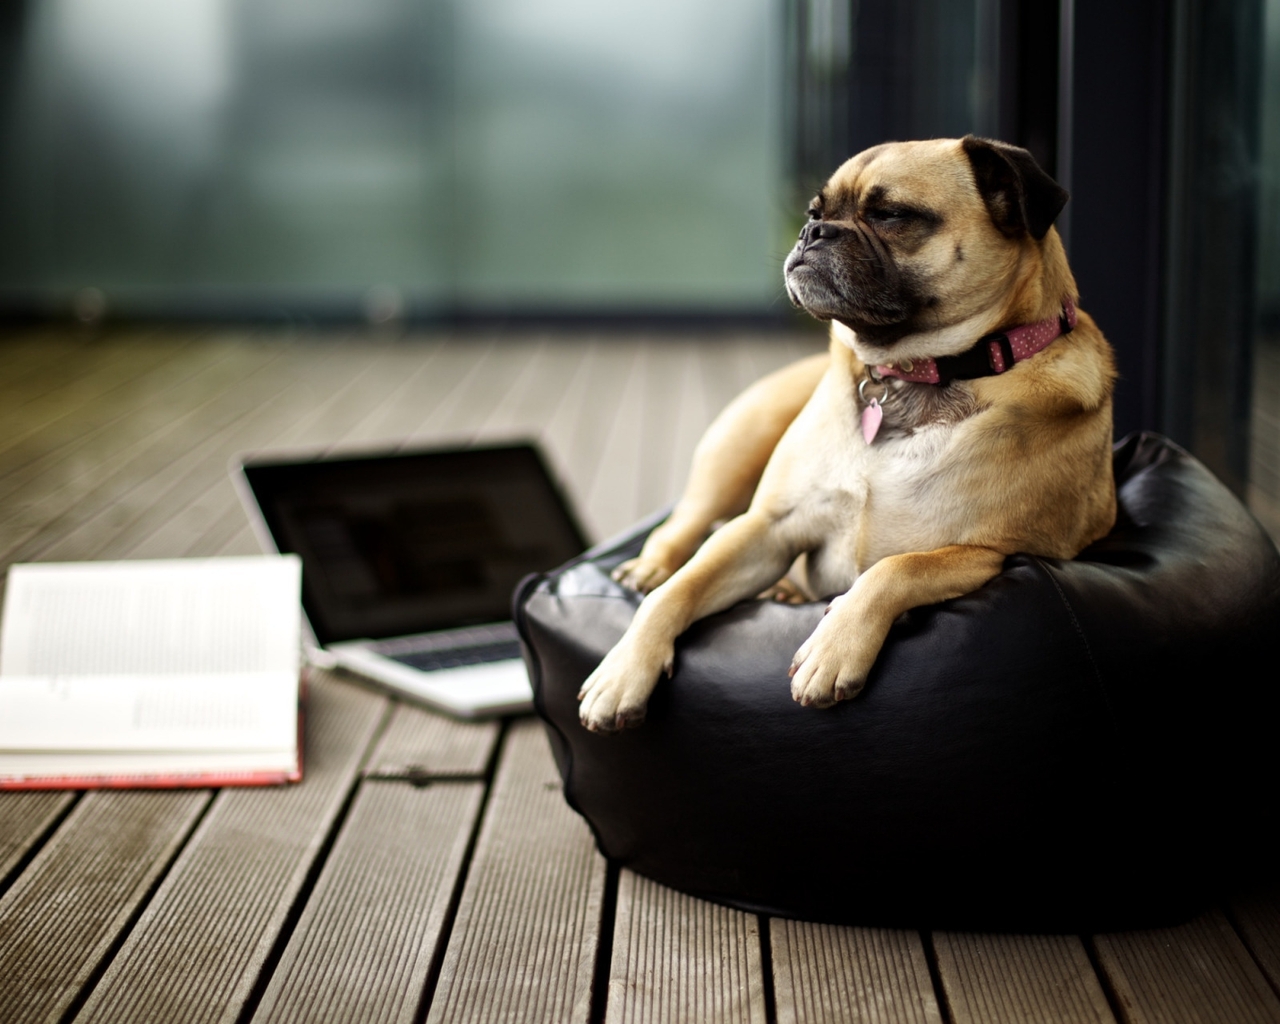 Image: Dog, lies, pillow, book, floor, laptop